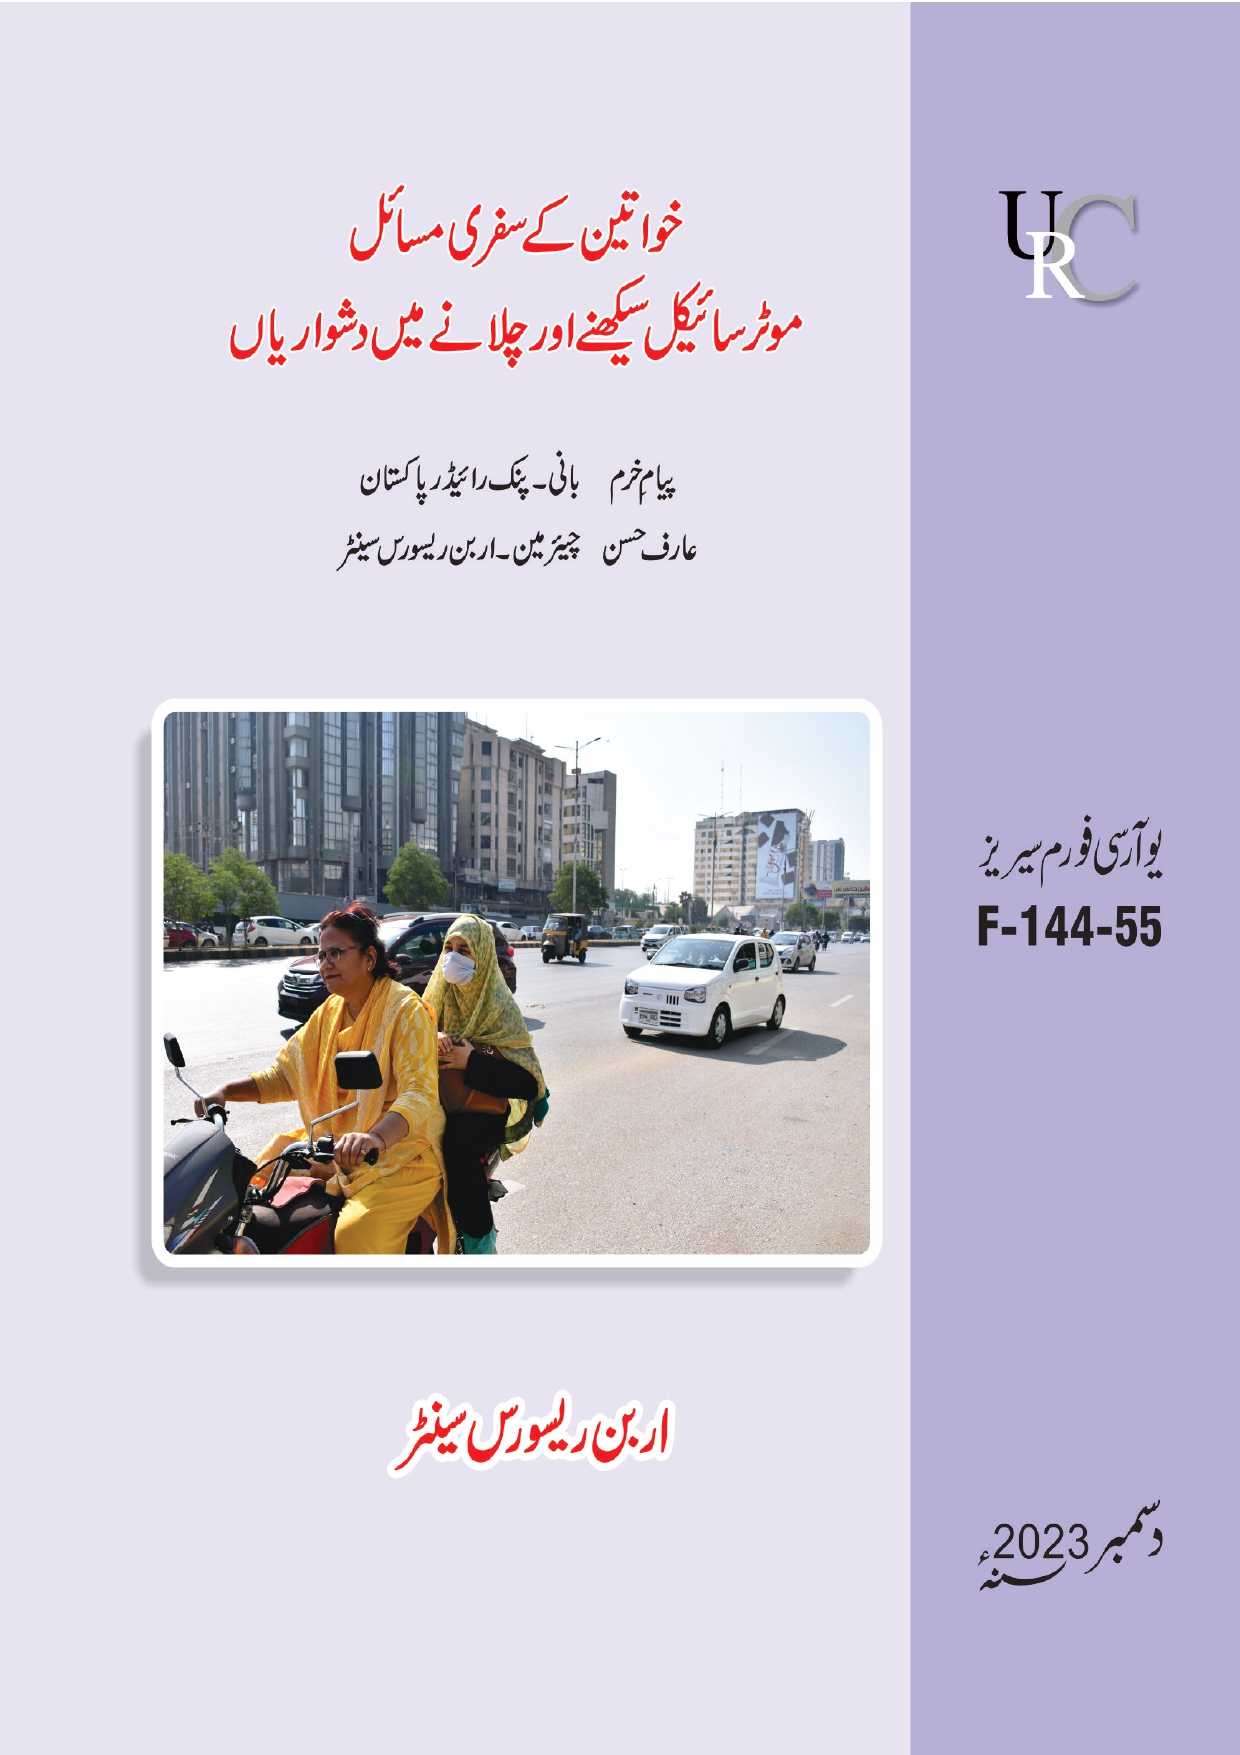 Women’s travel issues Forum By Arif Hasan & Payyam e Khurram 20 June 2023